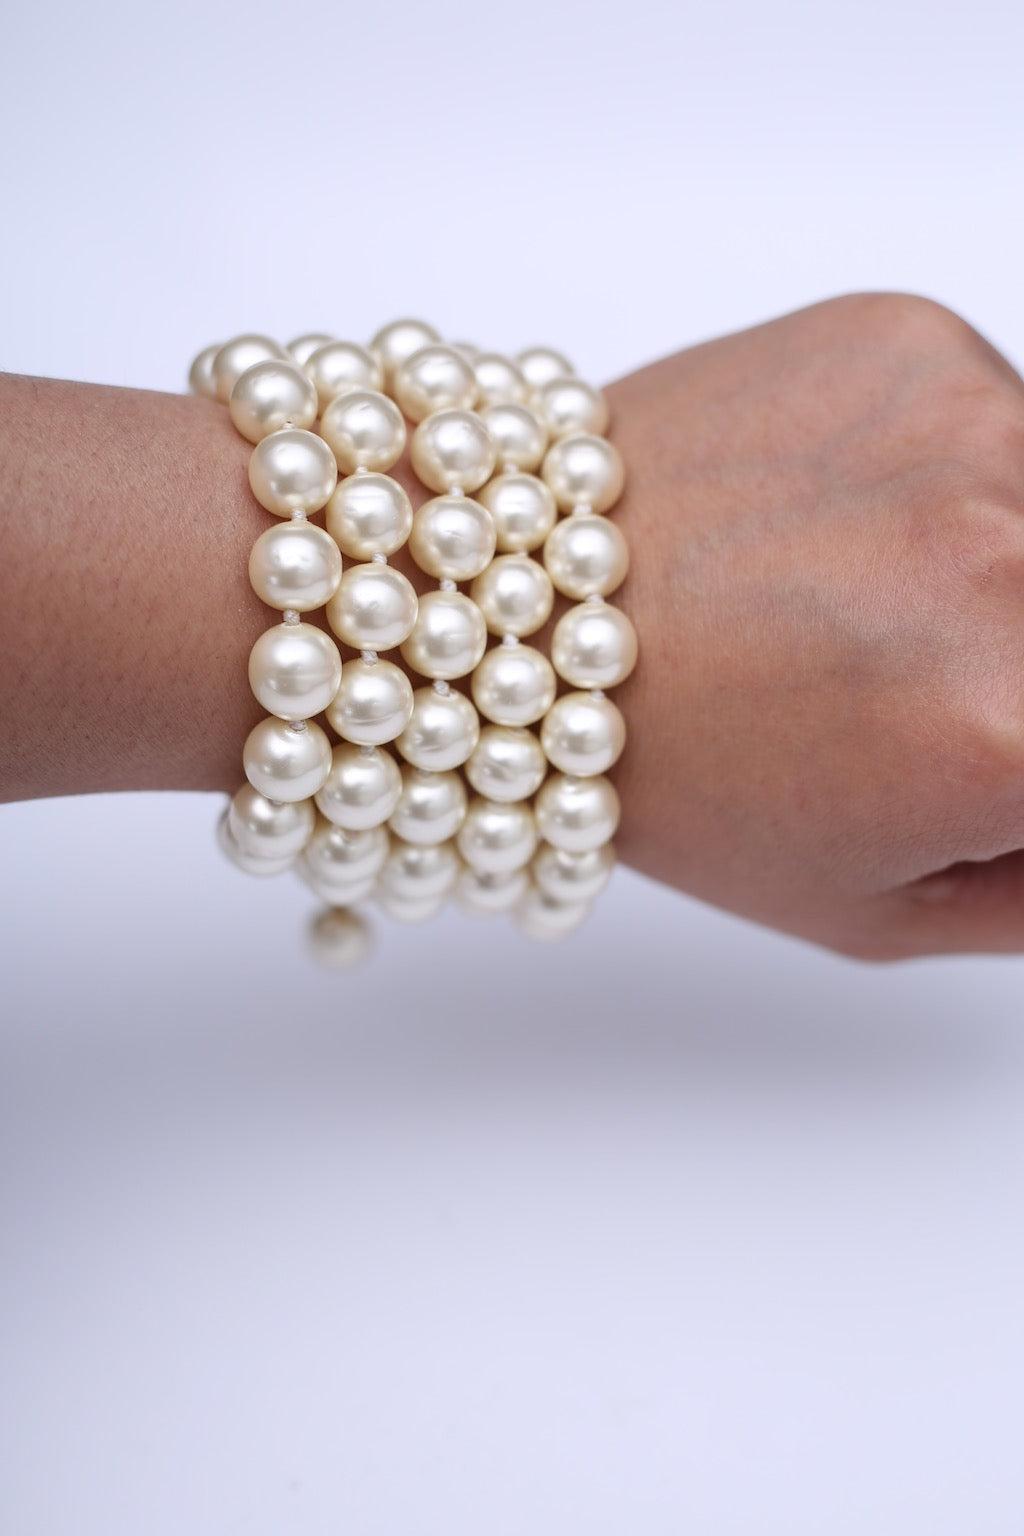 Chanel - (Made in France) Armband, bestehend aus fünf Strängen mit geknüpften Perlen. Sie wird mit einem goldenen Metallverschluss mit einer kleinen Kette geschlossen. Auf einem Schild signiert. 2cc3 Collection'S.

Zusätzliche